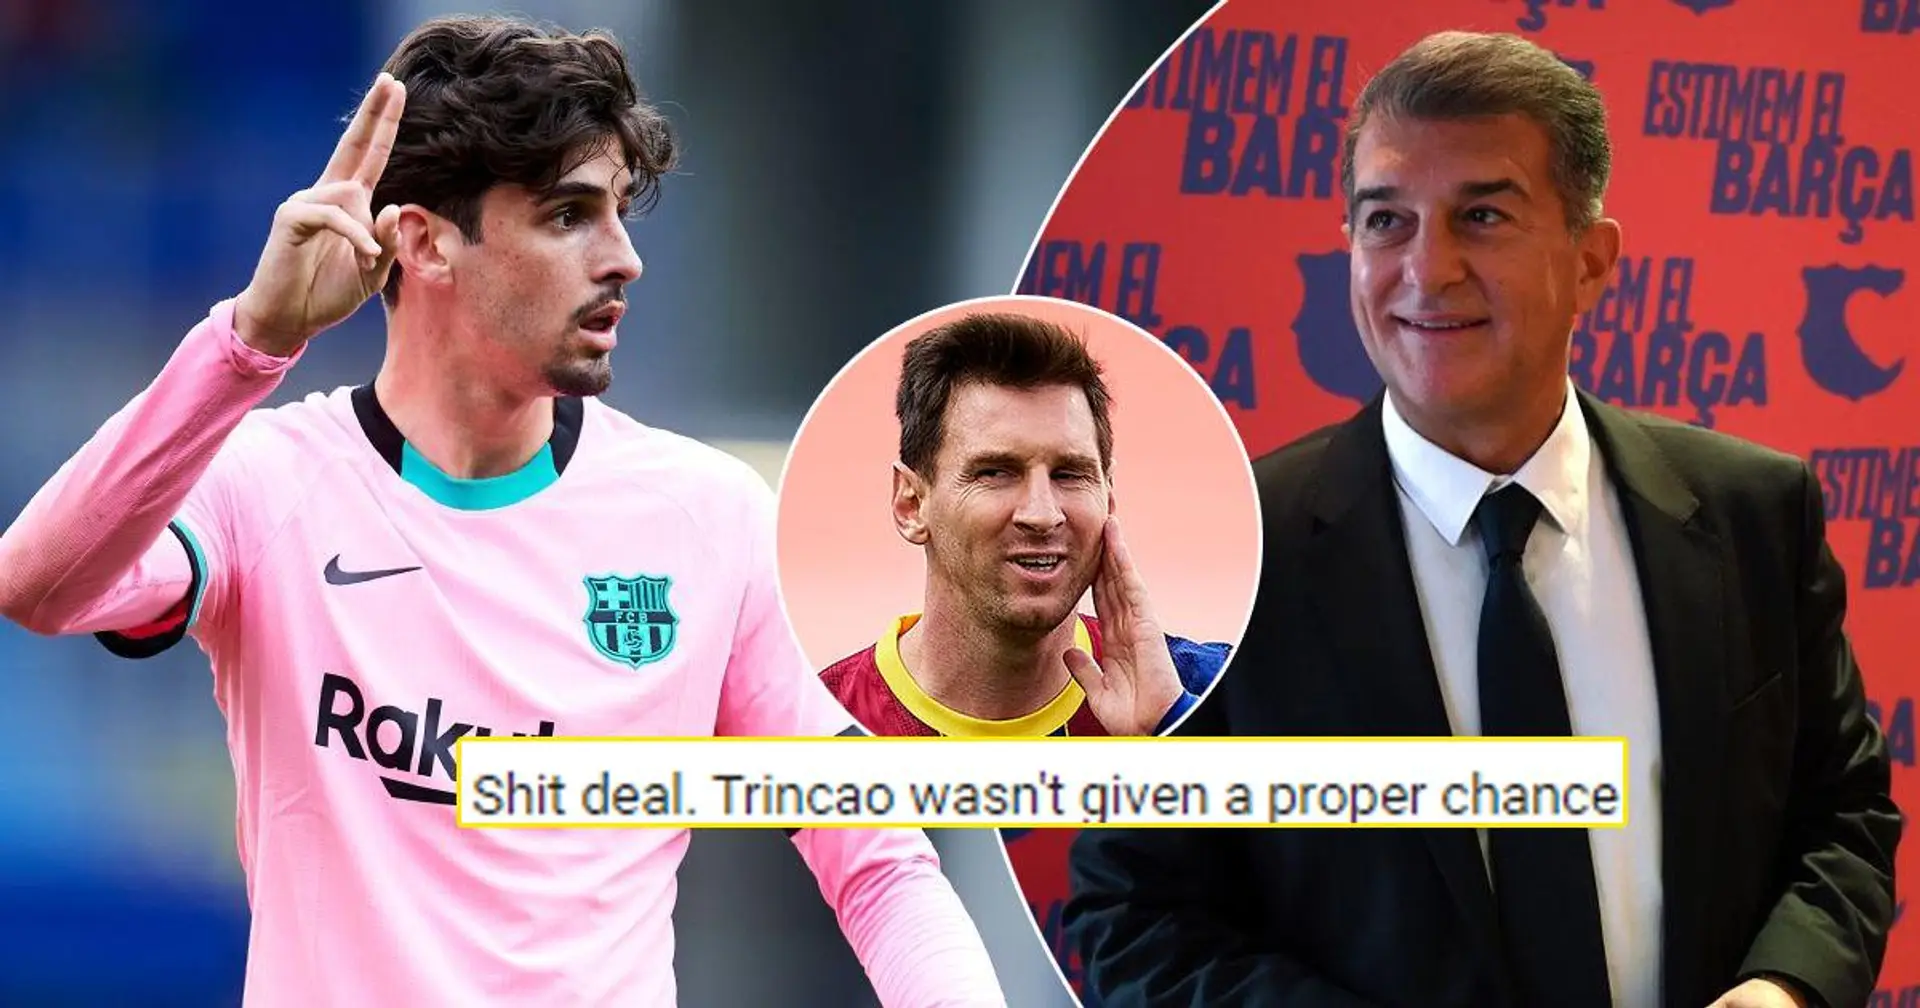 "Laporta expédie de jeunes joueurs pour le salaire de Messi", "Accord parfait": la communauté Blaugrana divisée sur le prêt de Trincao